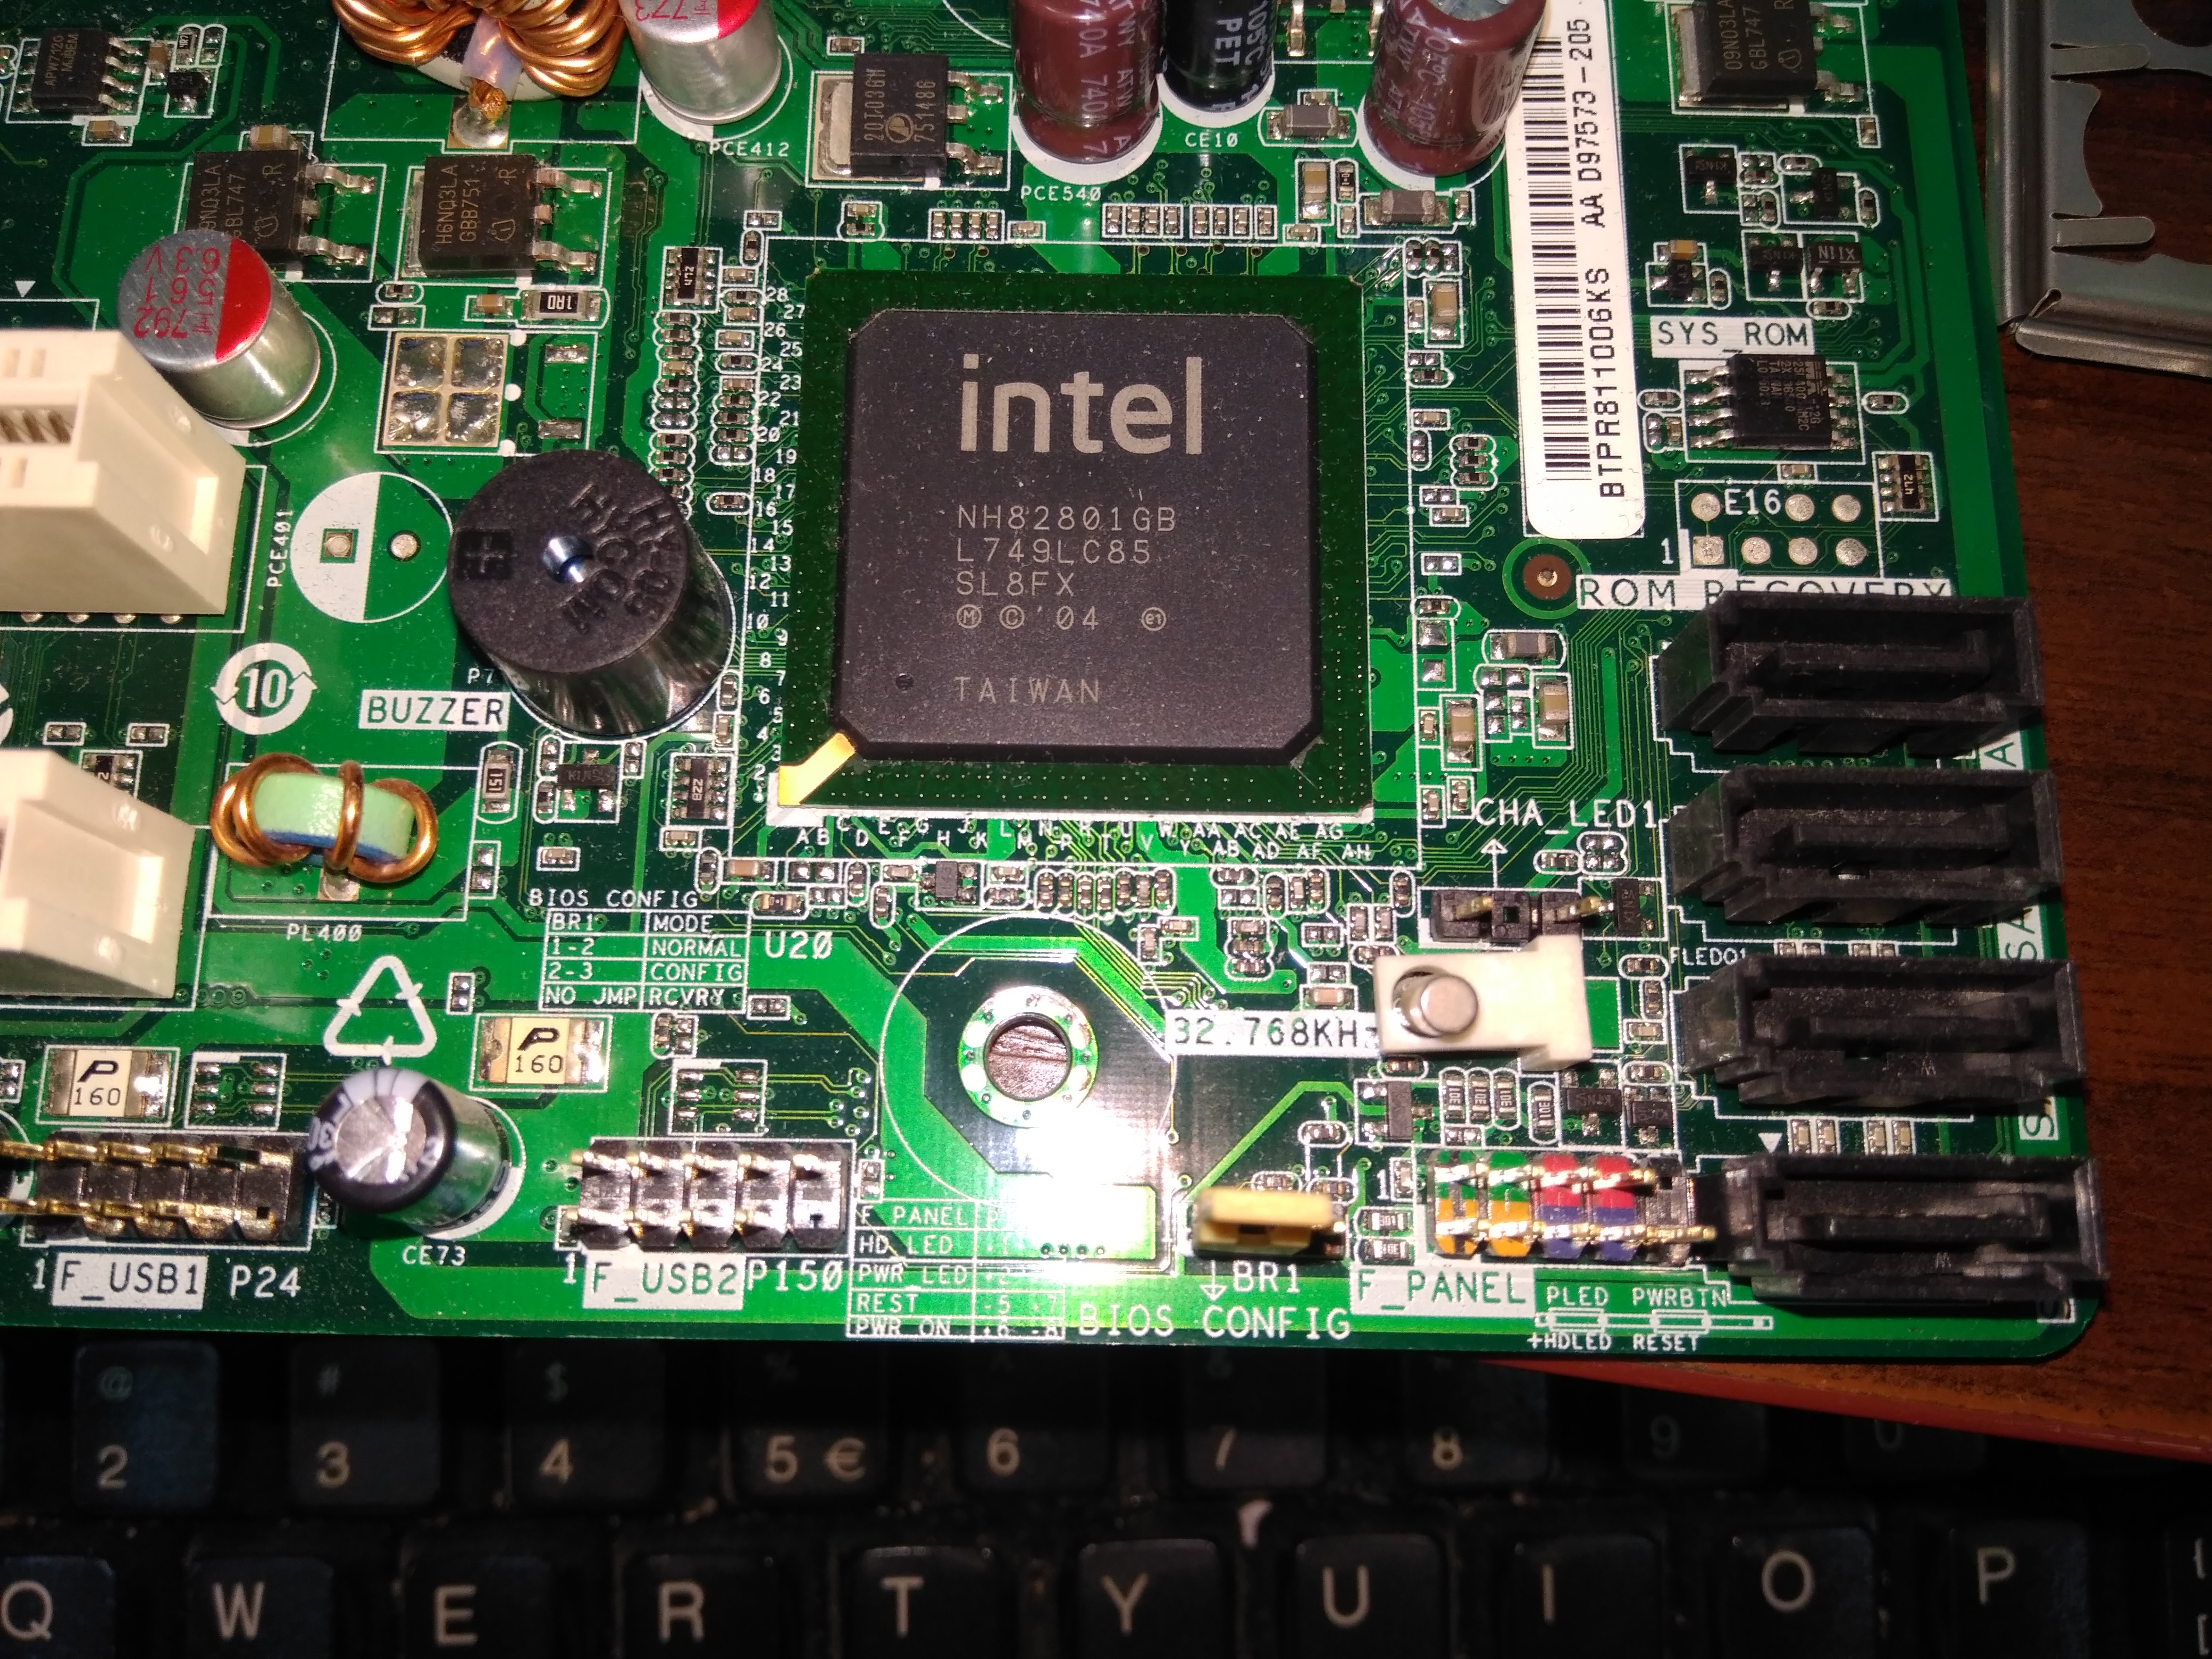 intel desktop board d845gvfn manual